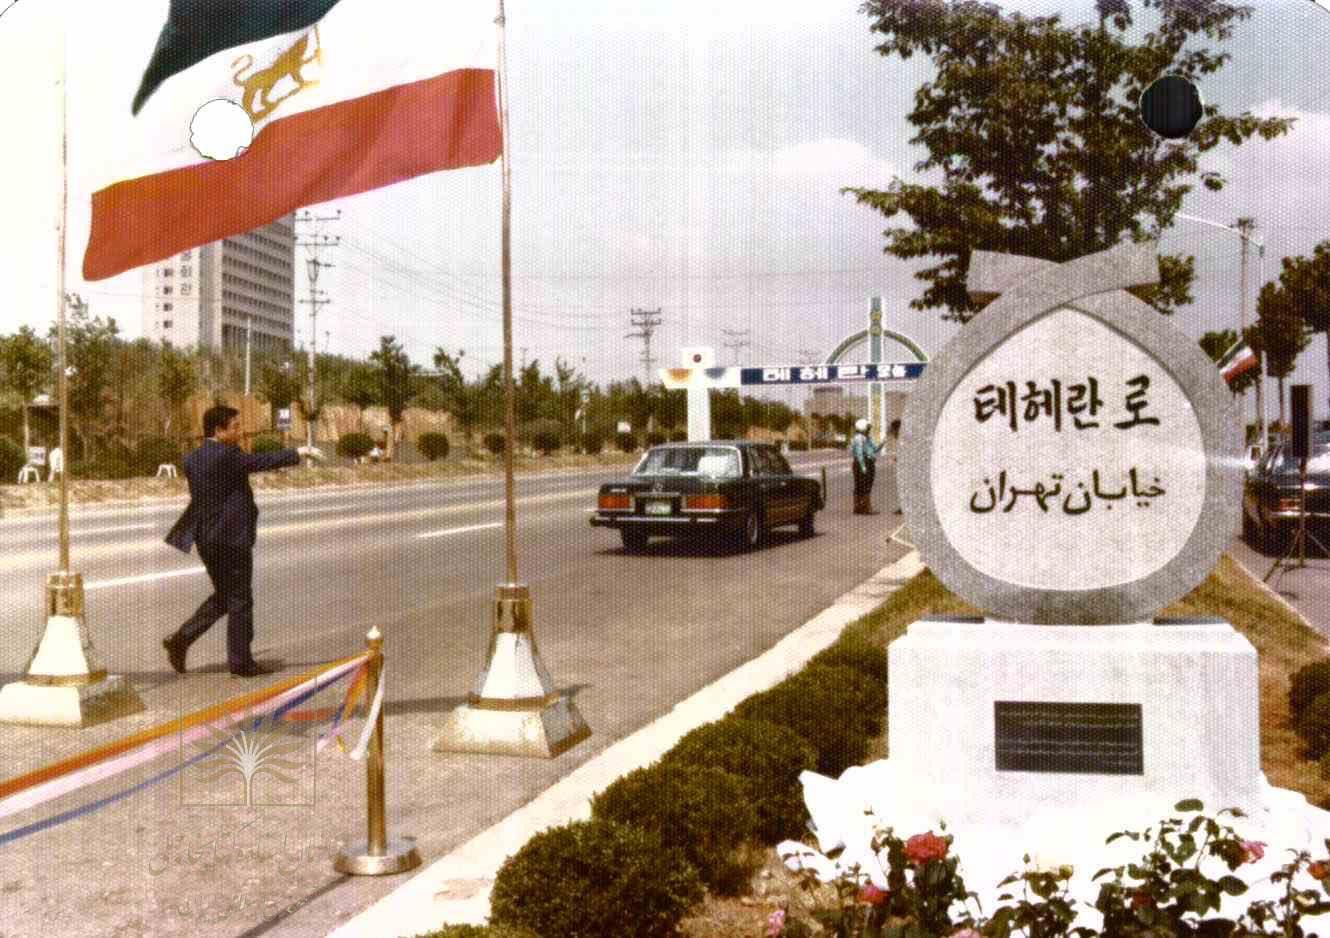 تصویر تاریخی از لحظه نامگذاری خیابان تهران در سئول